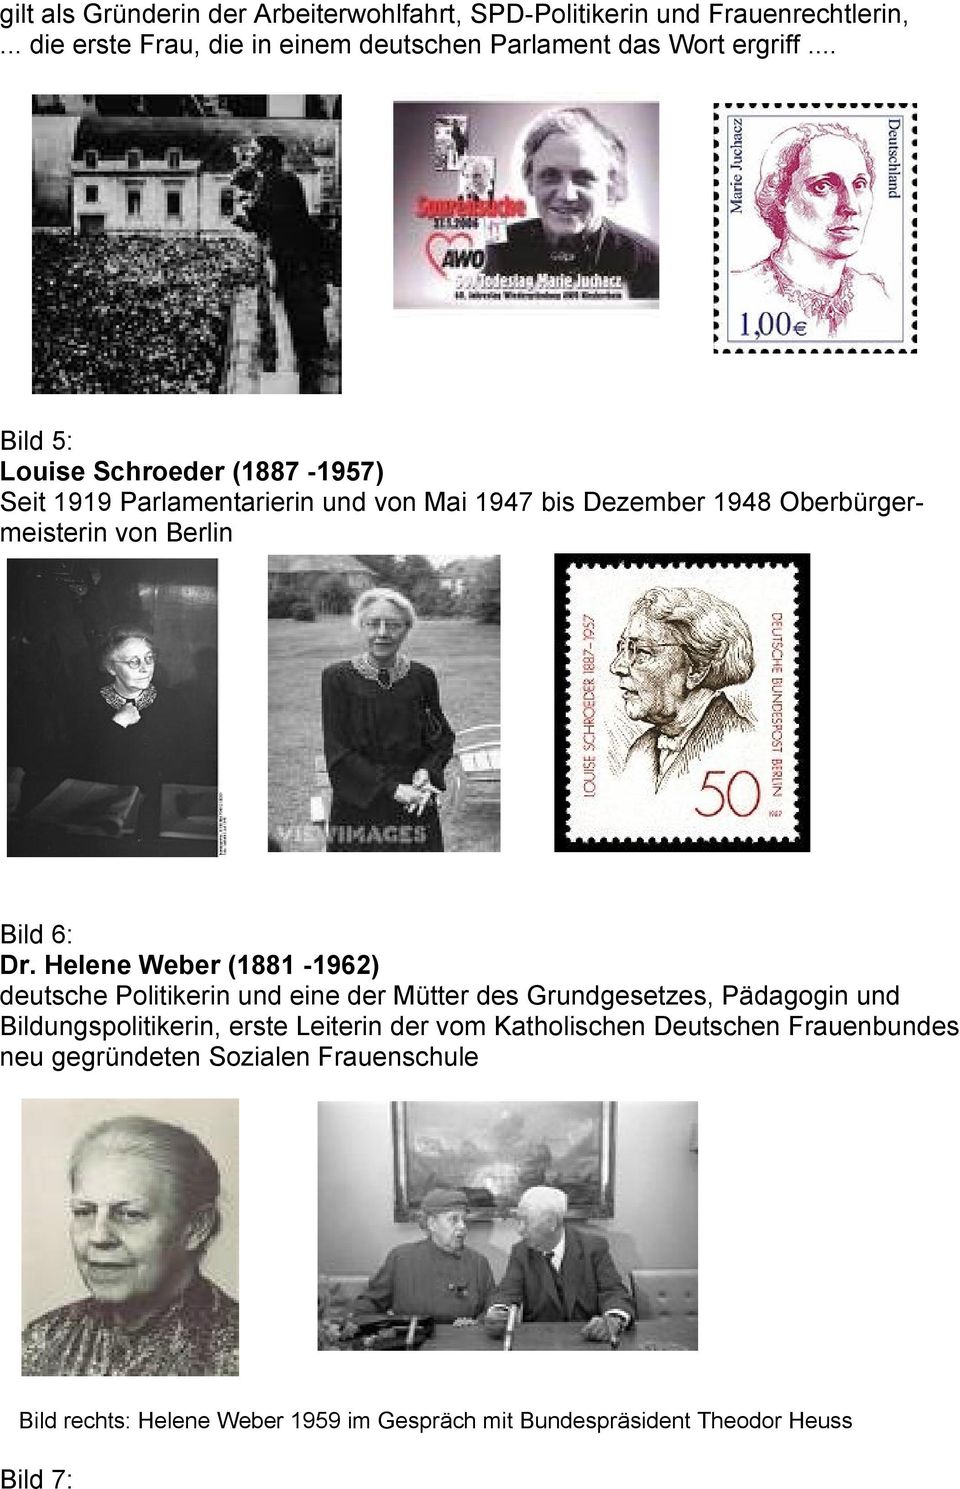 Helene Weber (1881-1962) deutsche Politikerin und eine der Mütter des Grundgesetzes, Pädagogin und Bildungspolitikerin, erste Leiterin der vom